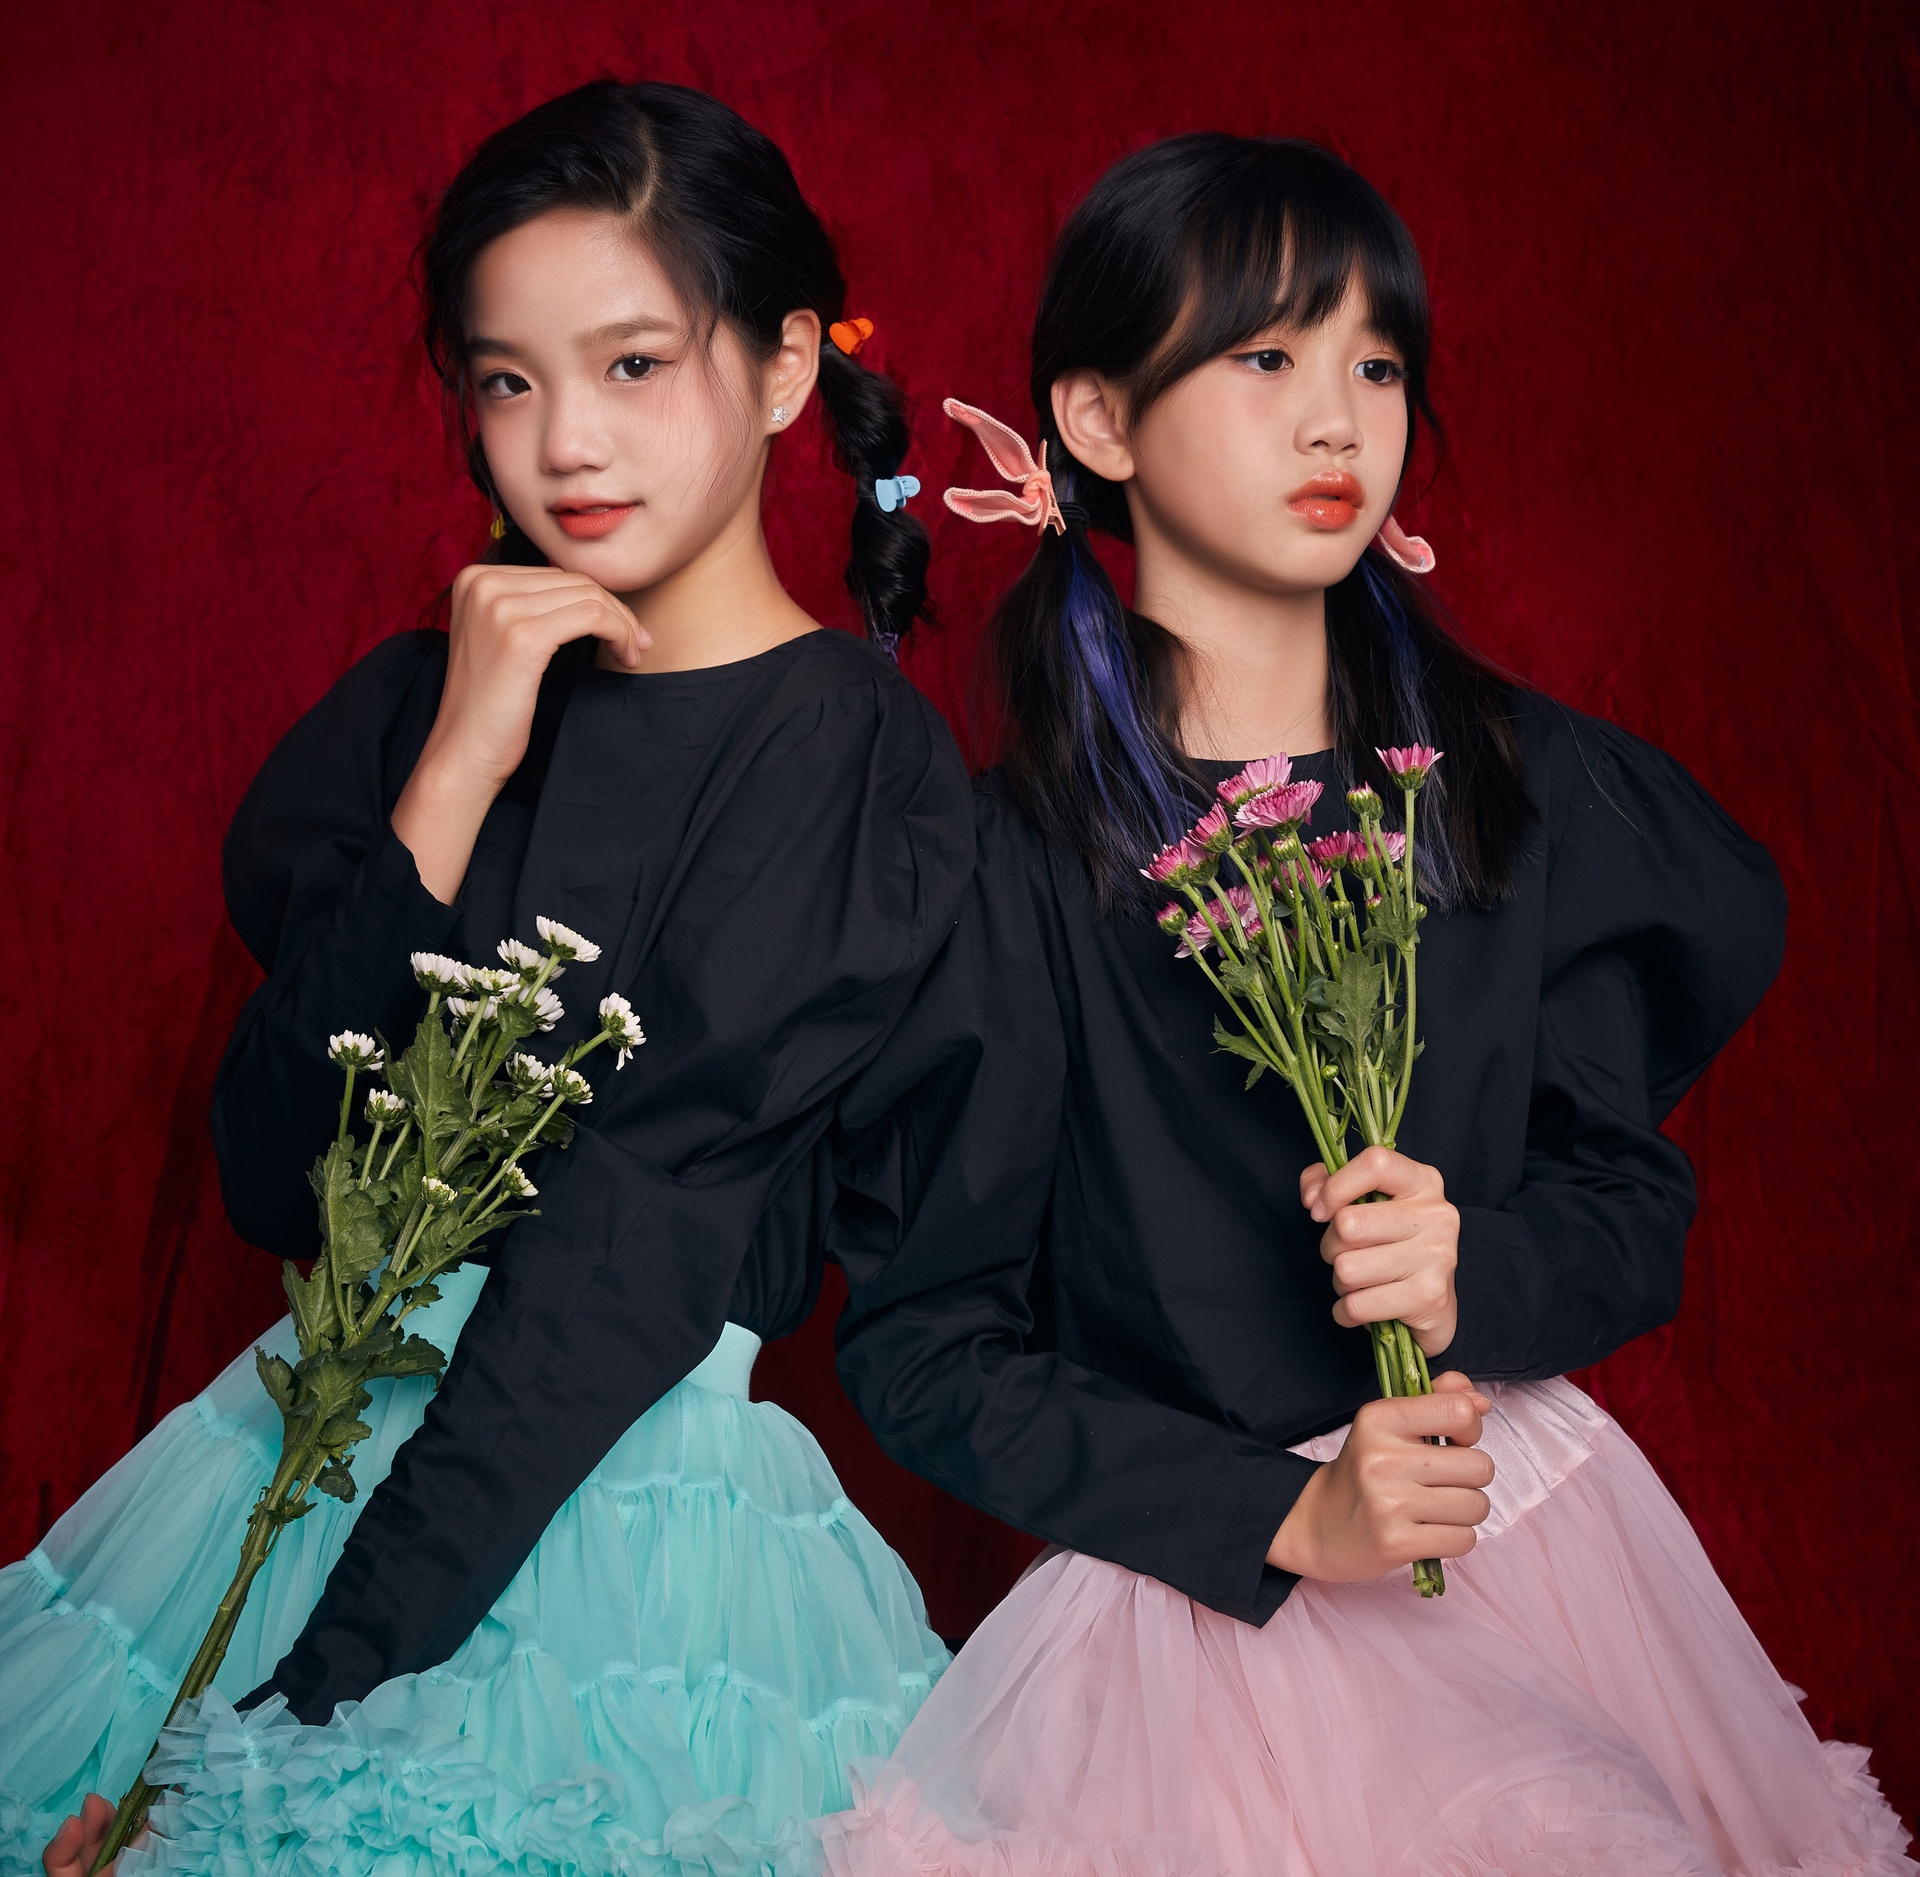 Nhan sắc hai con gái xinh đẹp của mỹ nhân gốc Việt Chung Lệ Đề - Ảnh 7